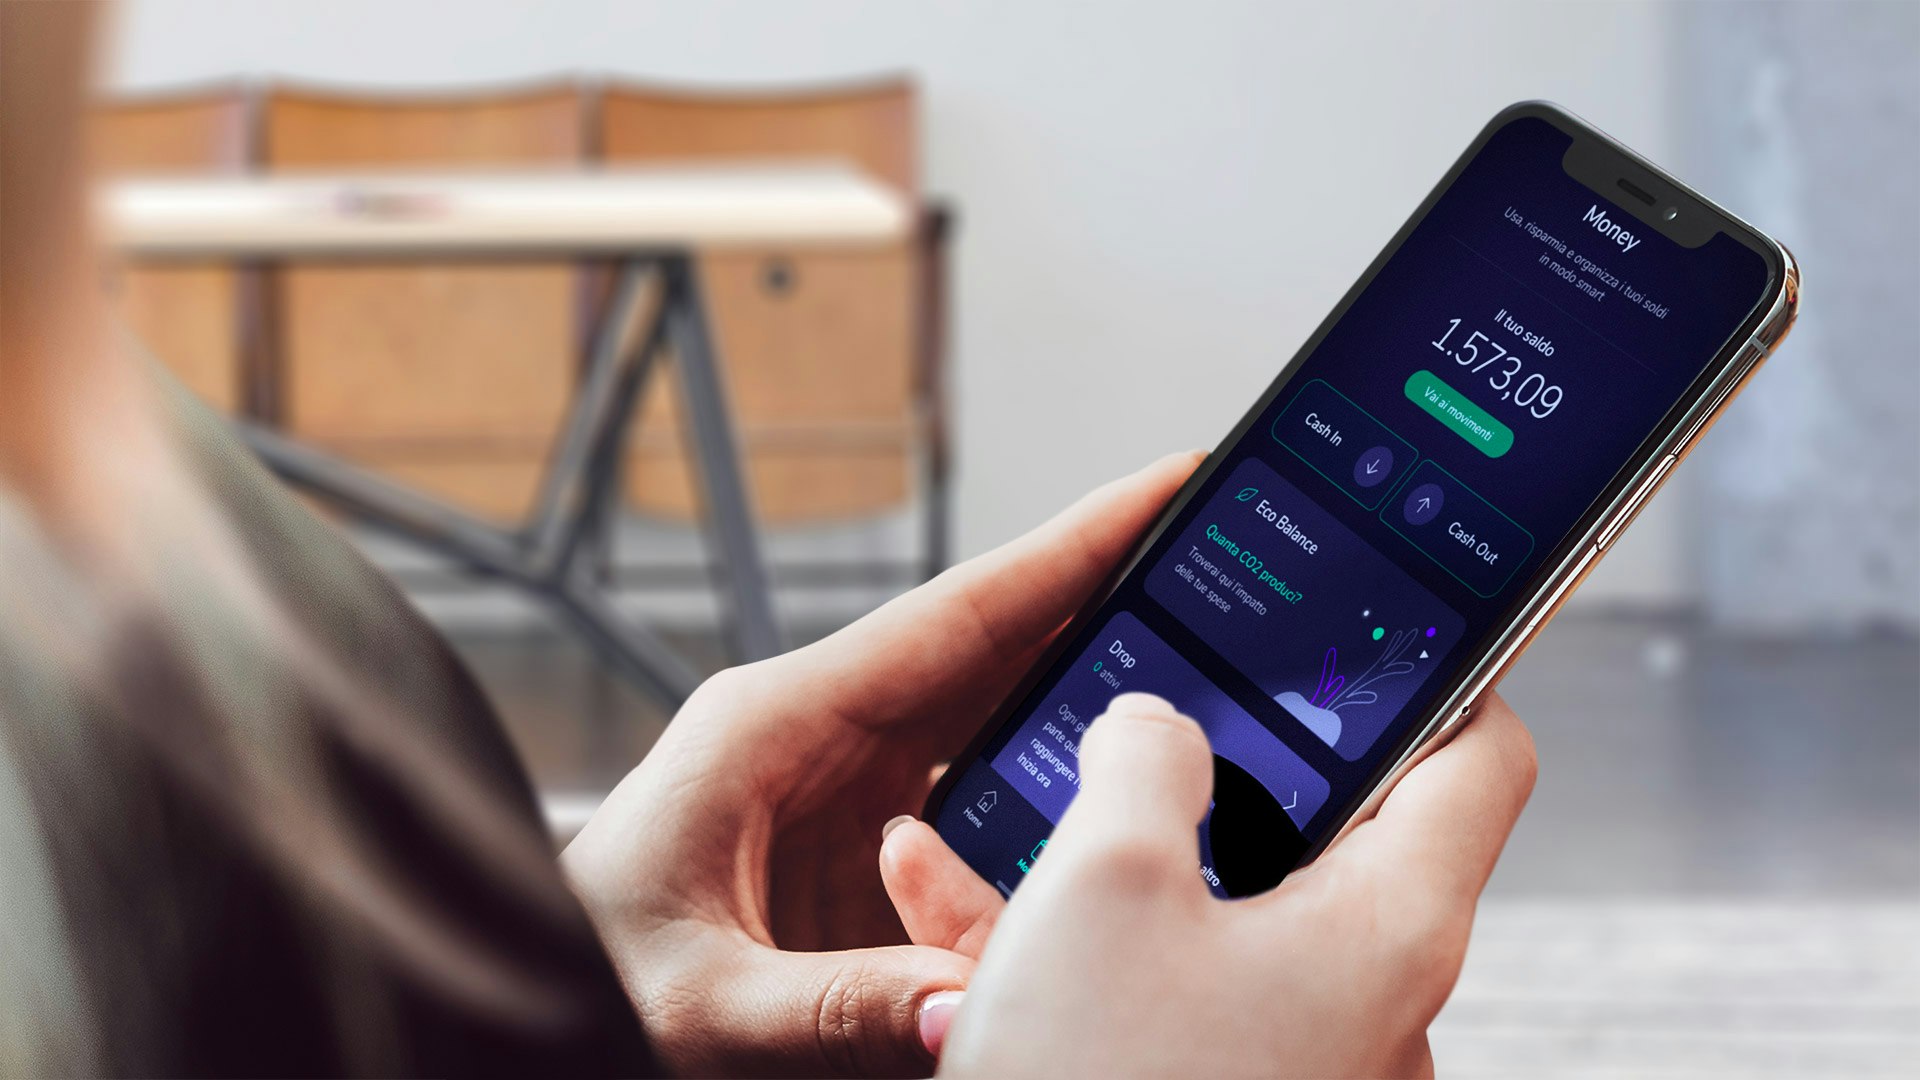 Servizi Sketchin, Experience design - Interfaccia Flowe app mobile, offre nuovi servizi oltre il banking e nuove esperienze che consentono di pianificare il proprio futuro